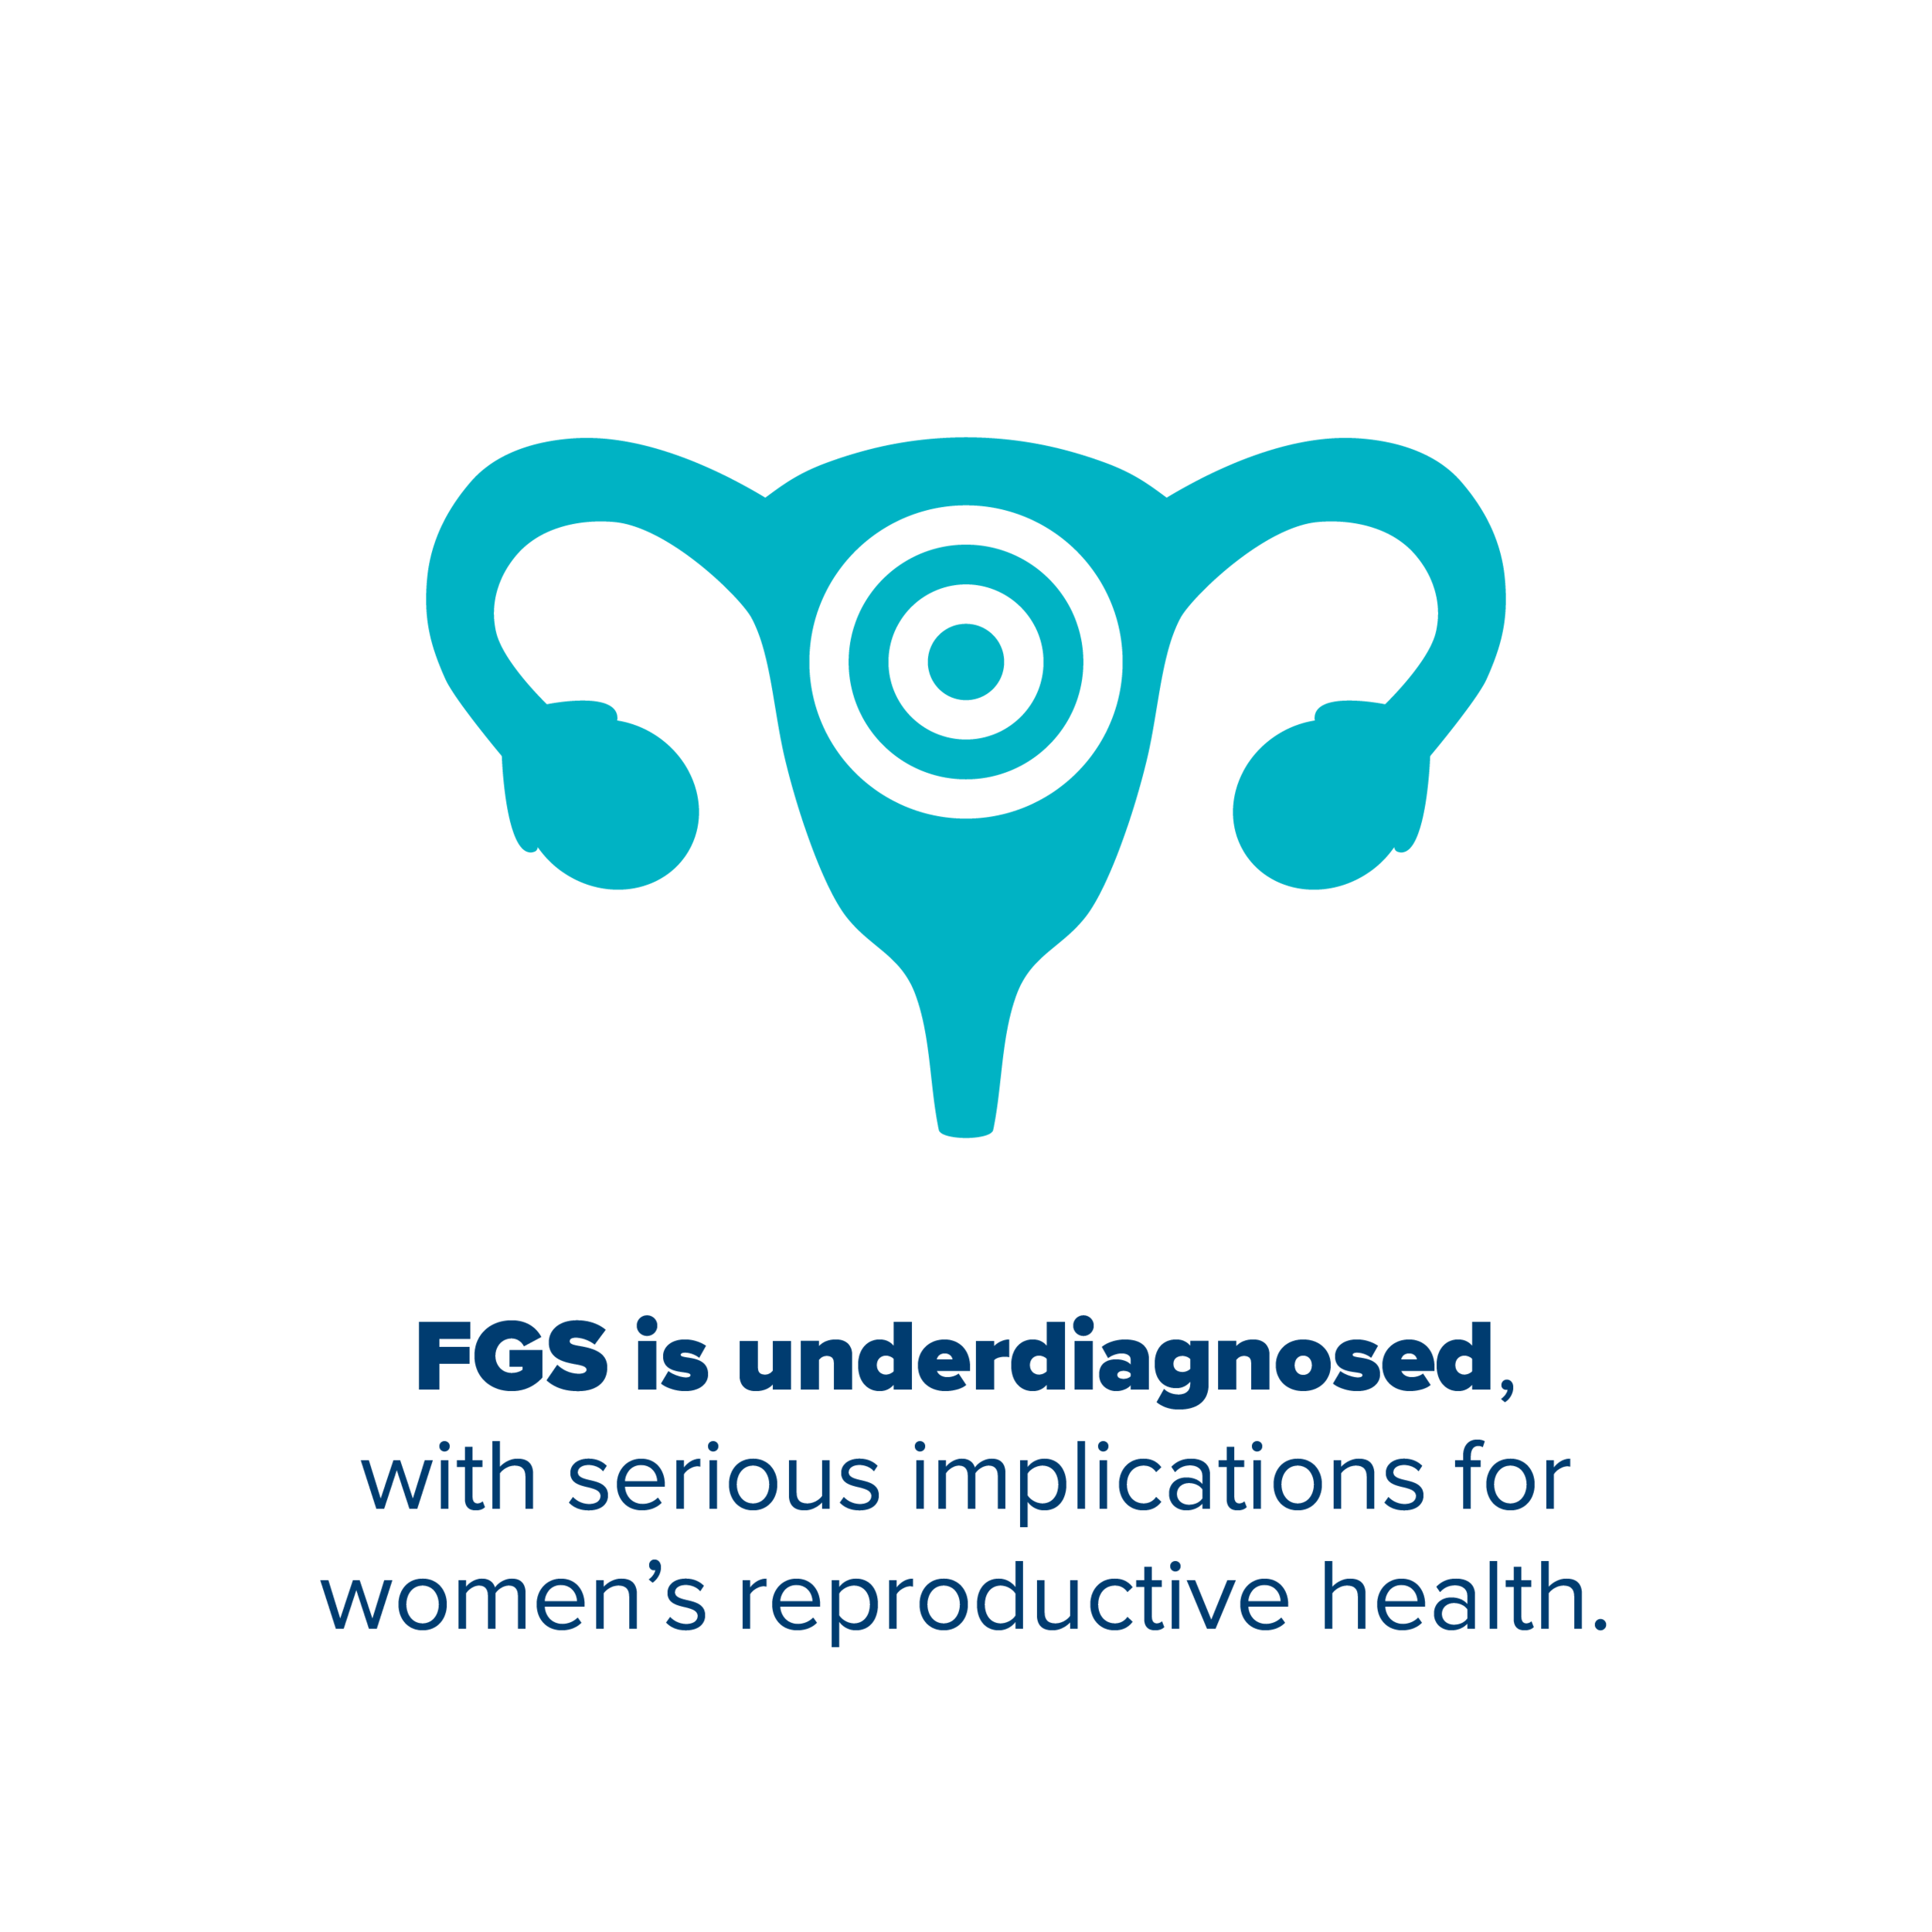  FGS诊断不足，对妇女生殖健康造成严重影响. 